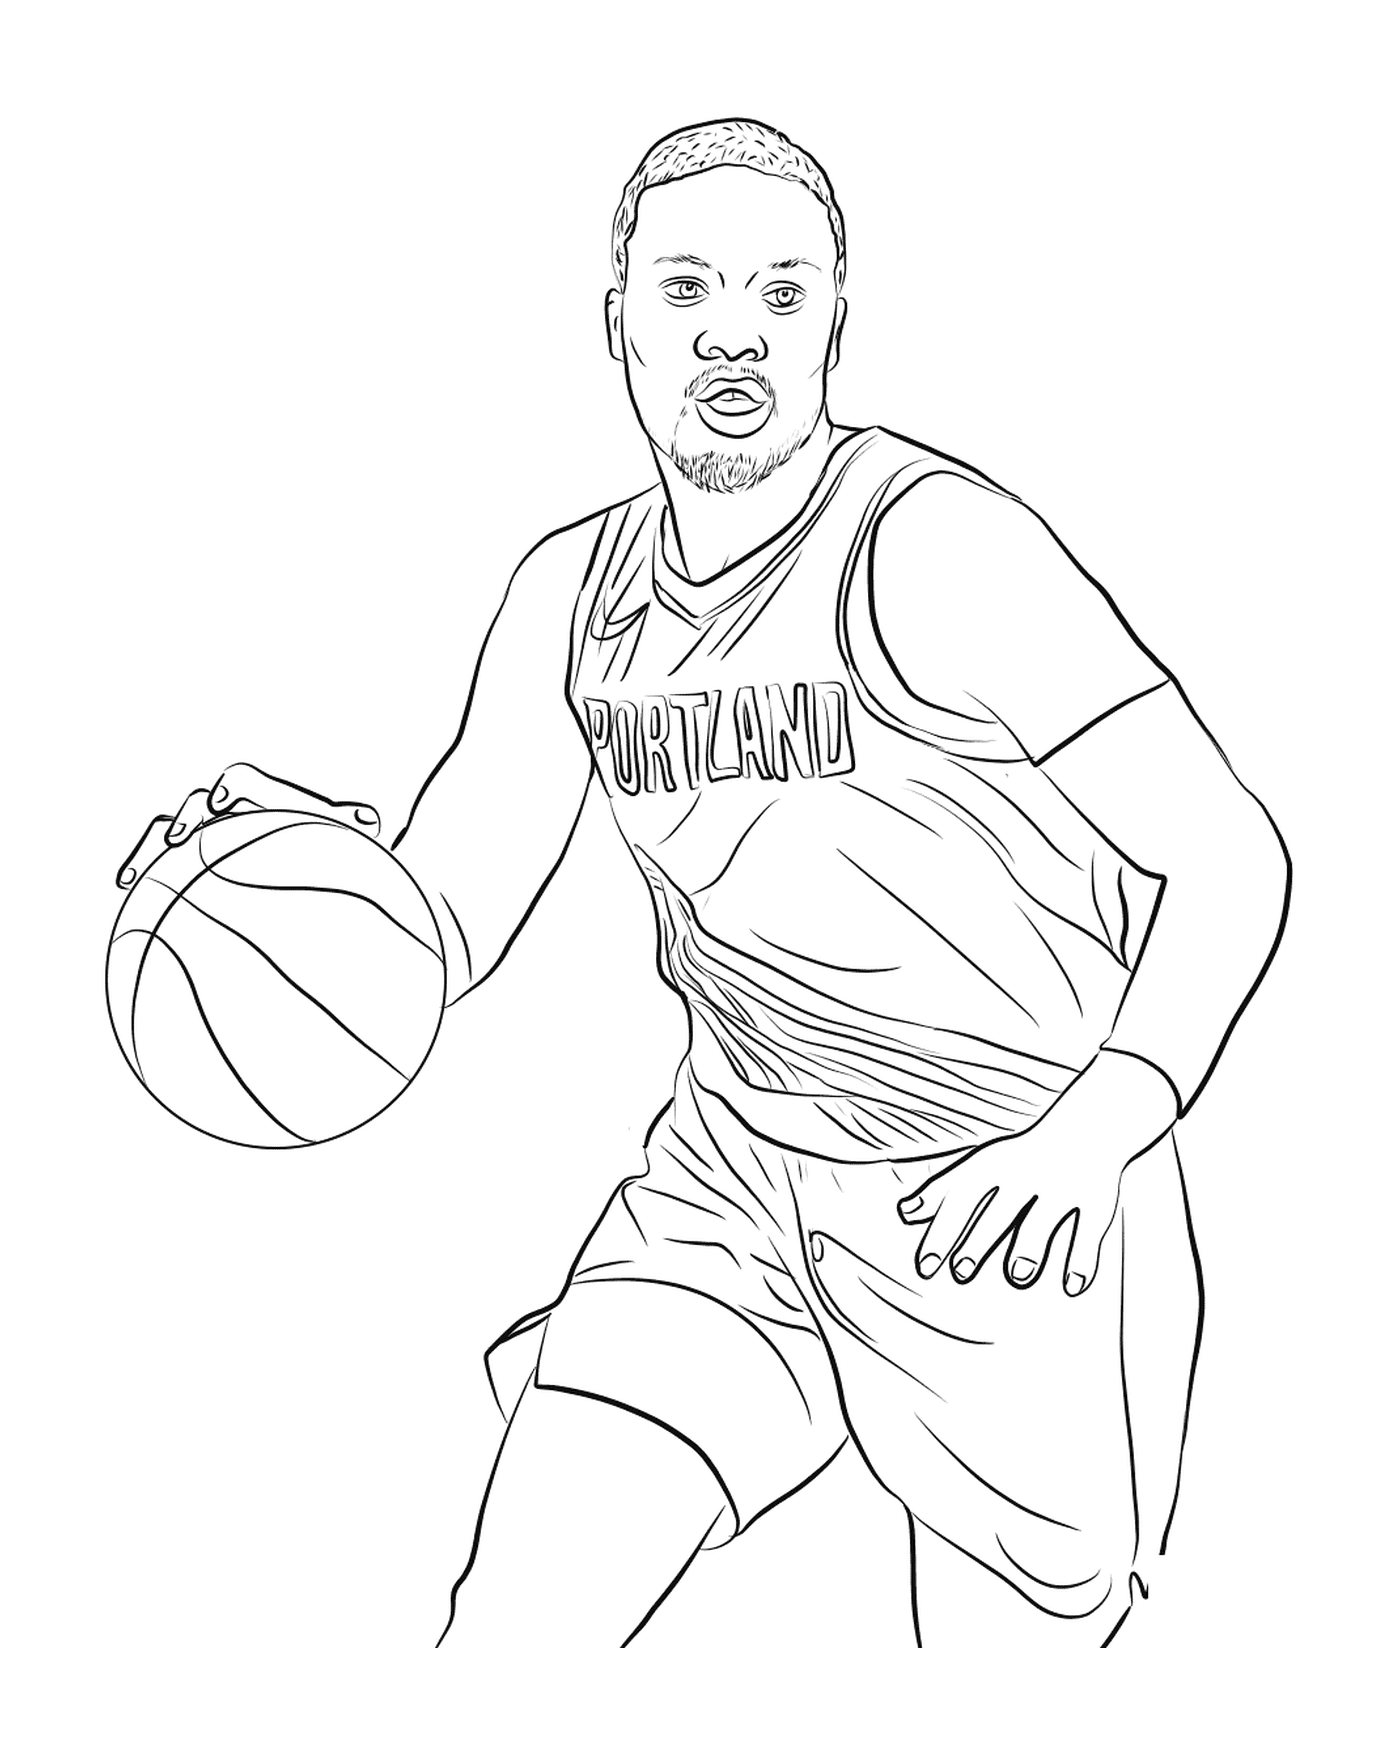  Дэмиан Лиллард, баскетболист 